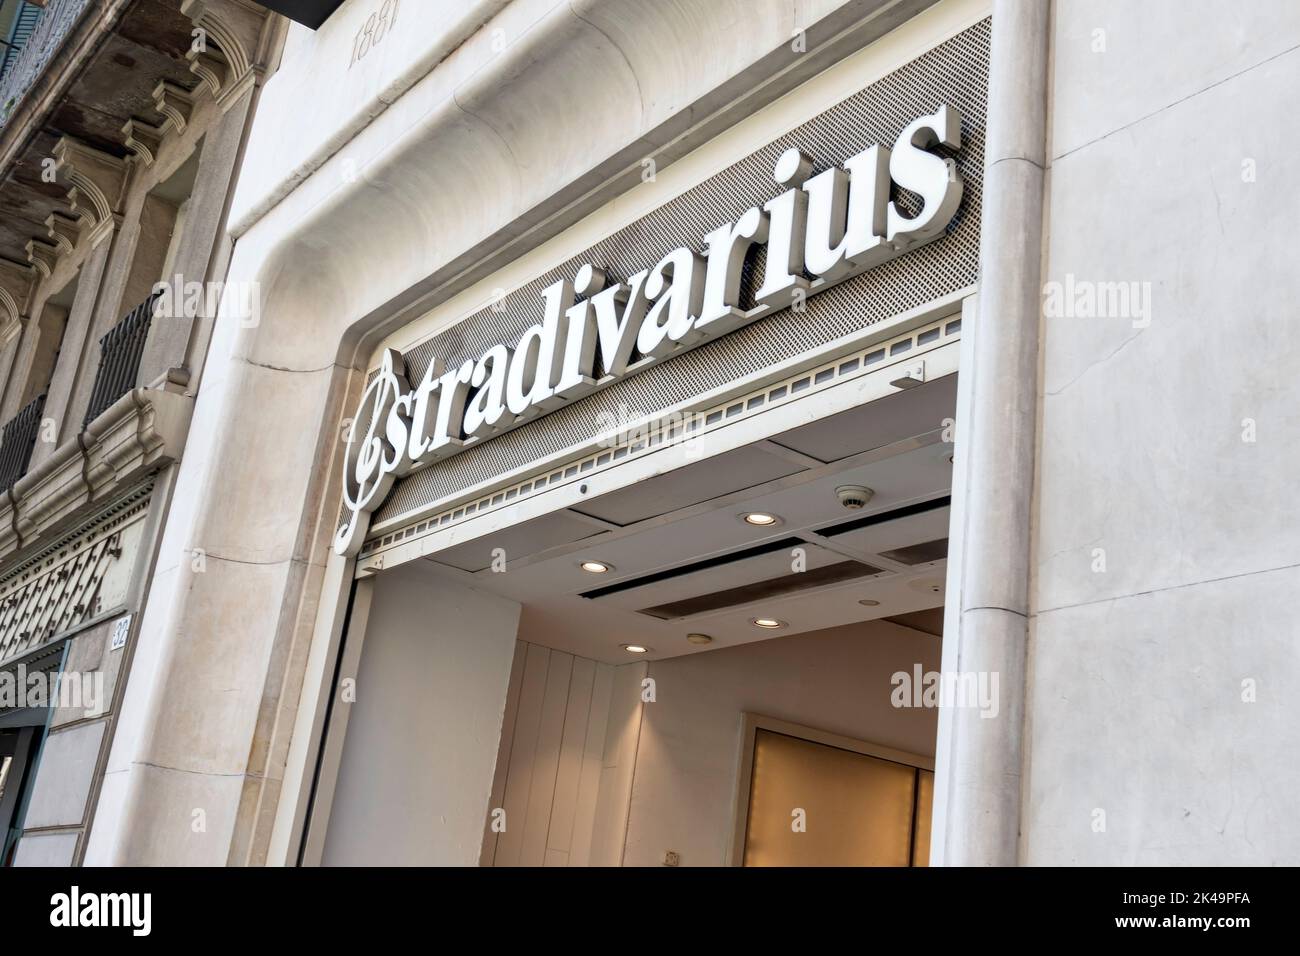 Barcellona, Spagna - 9 maggio 2022: Logo Stradivarius su un negozio Stradivarius. Stradivarius è un rivenditore di abbigliamento femminile di moda veloce. Foto Stock